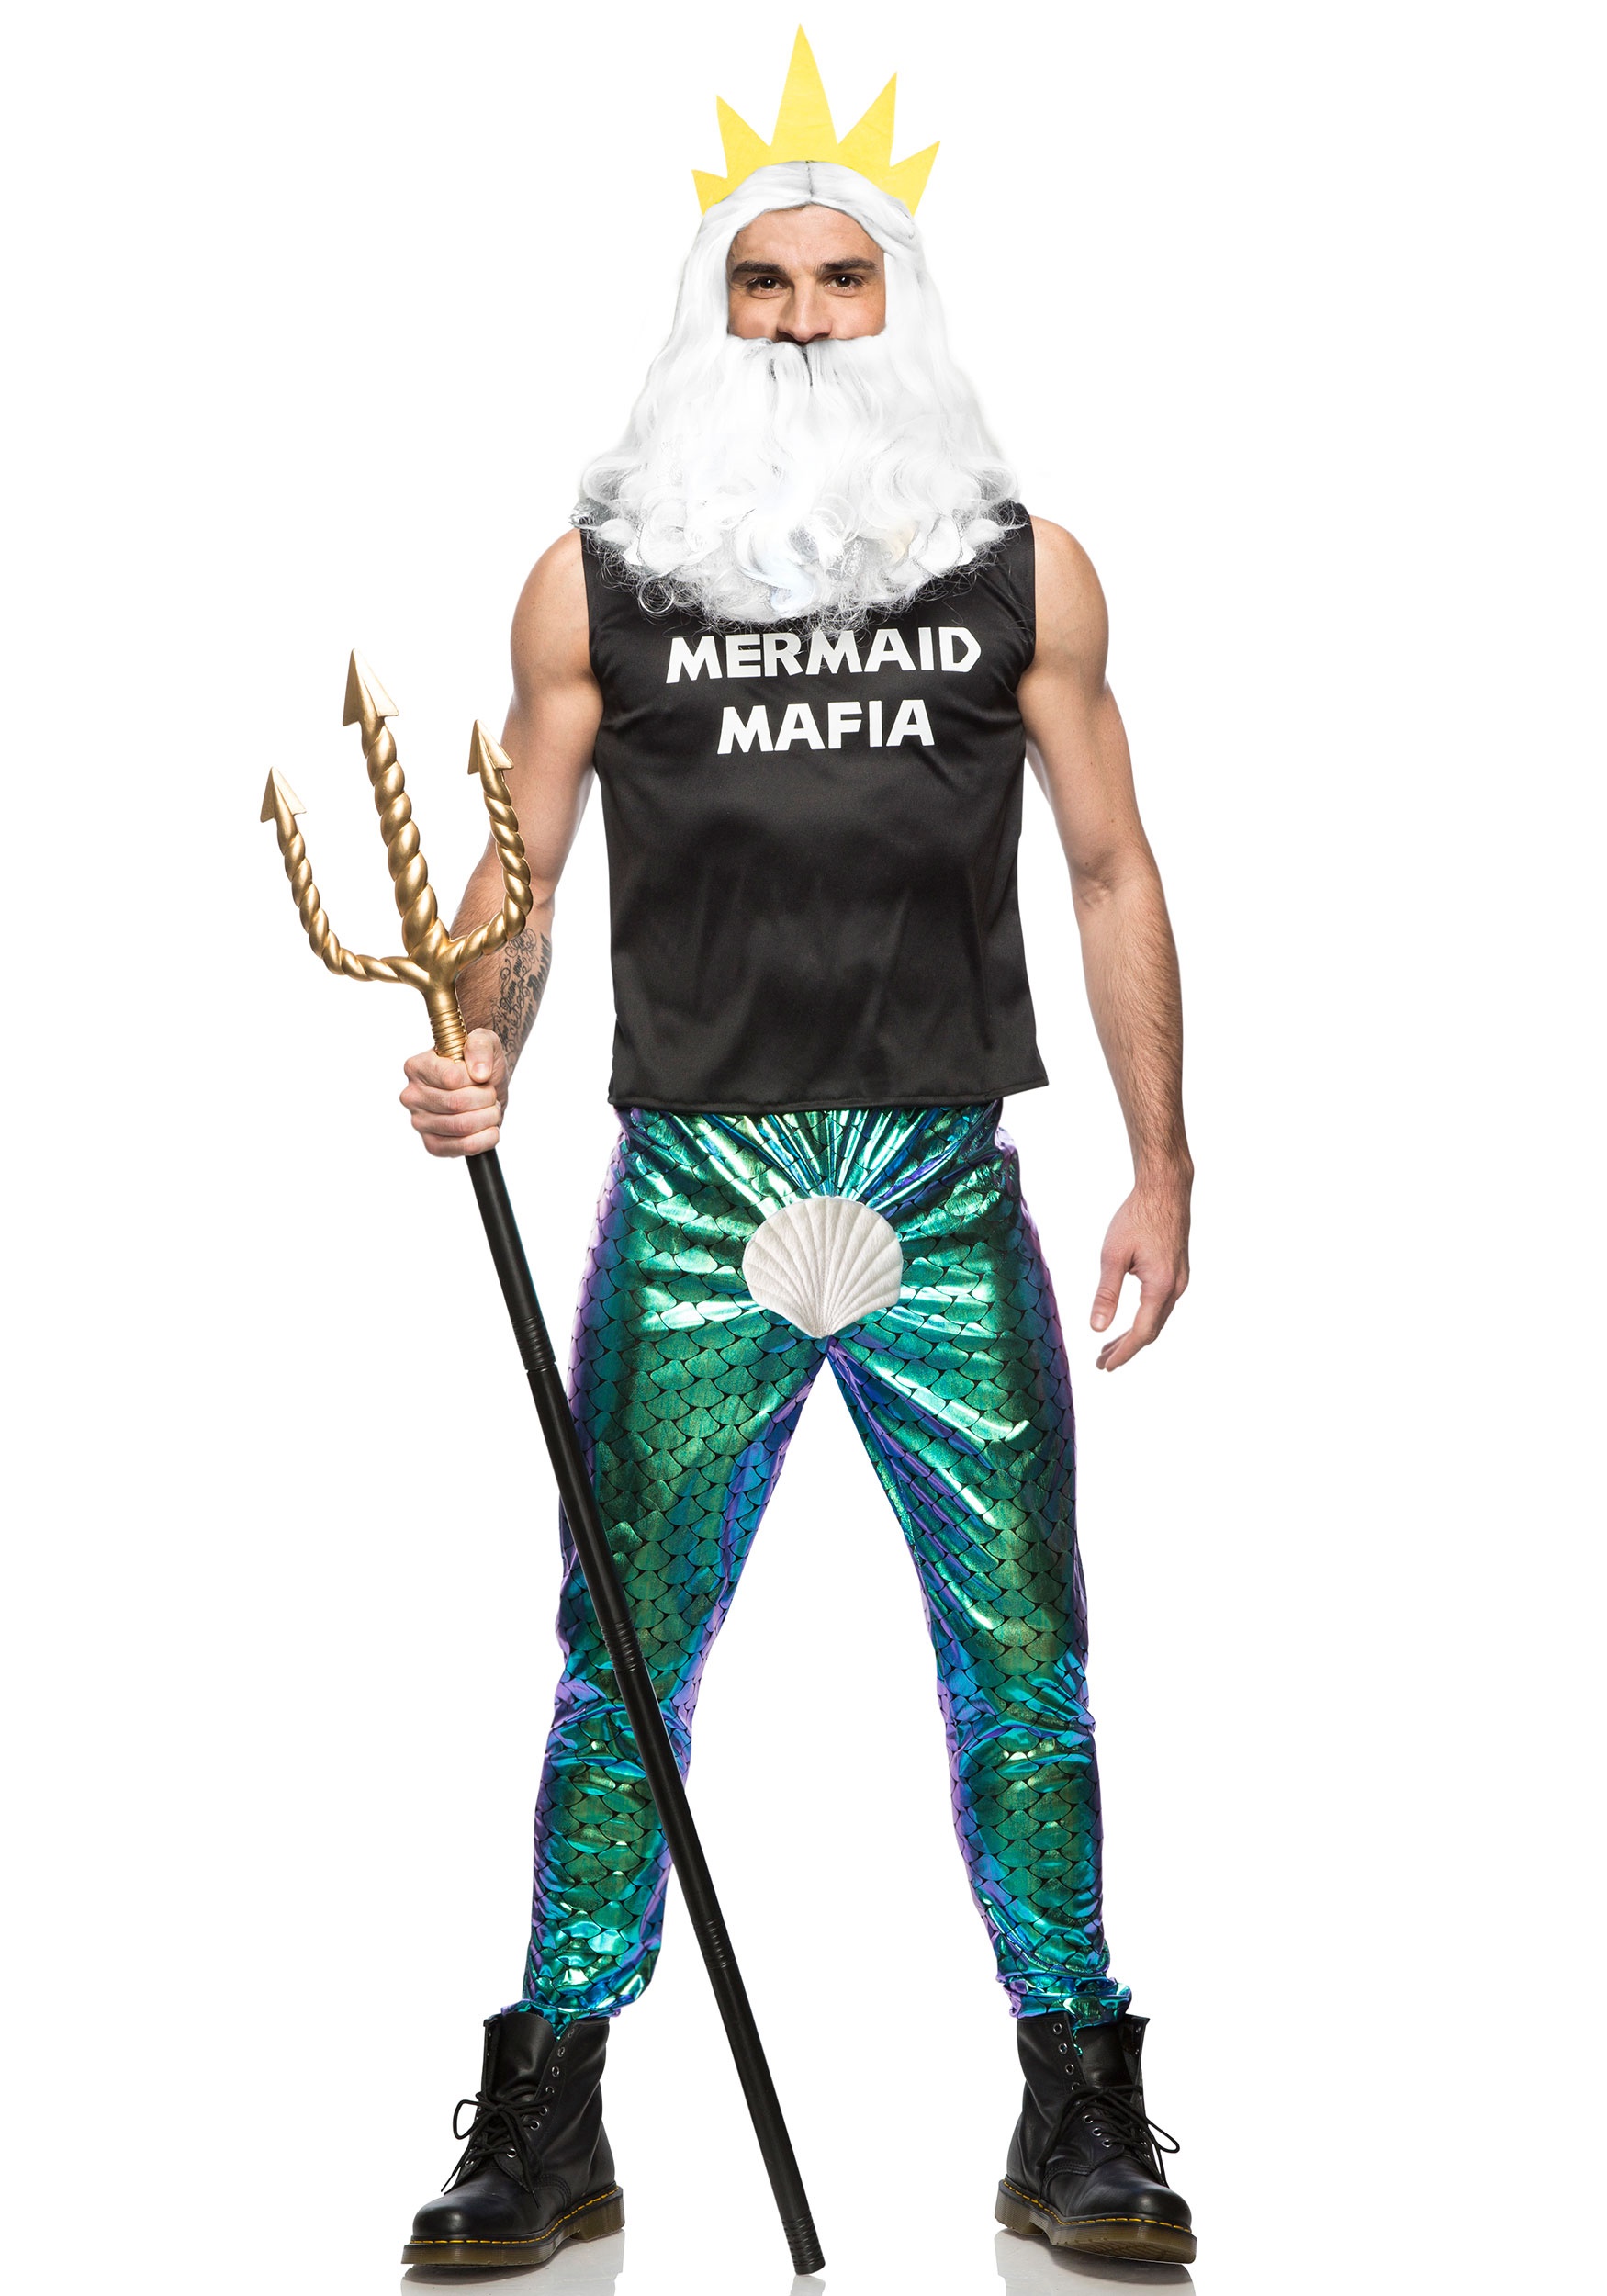 6.) Mermaid Mafia Men's Costume | Unique Halloween Costumes